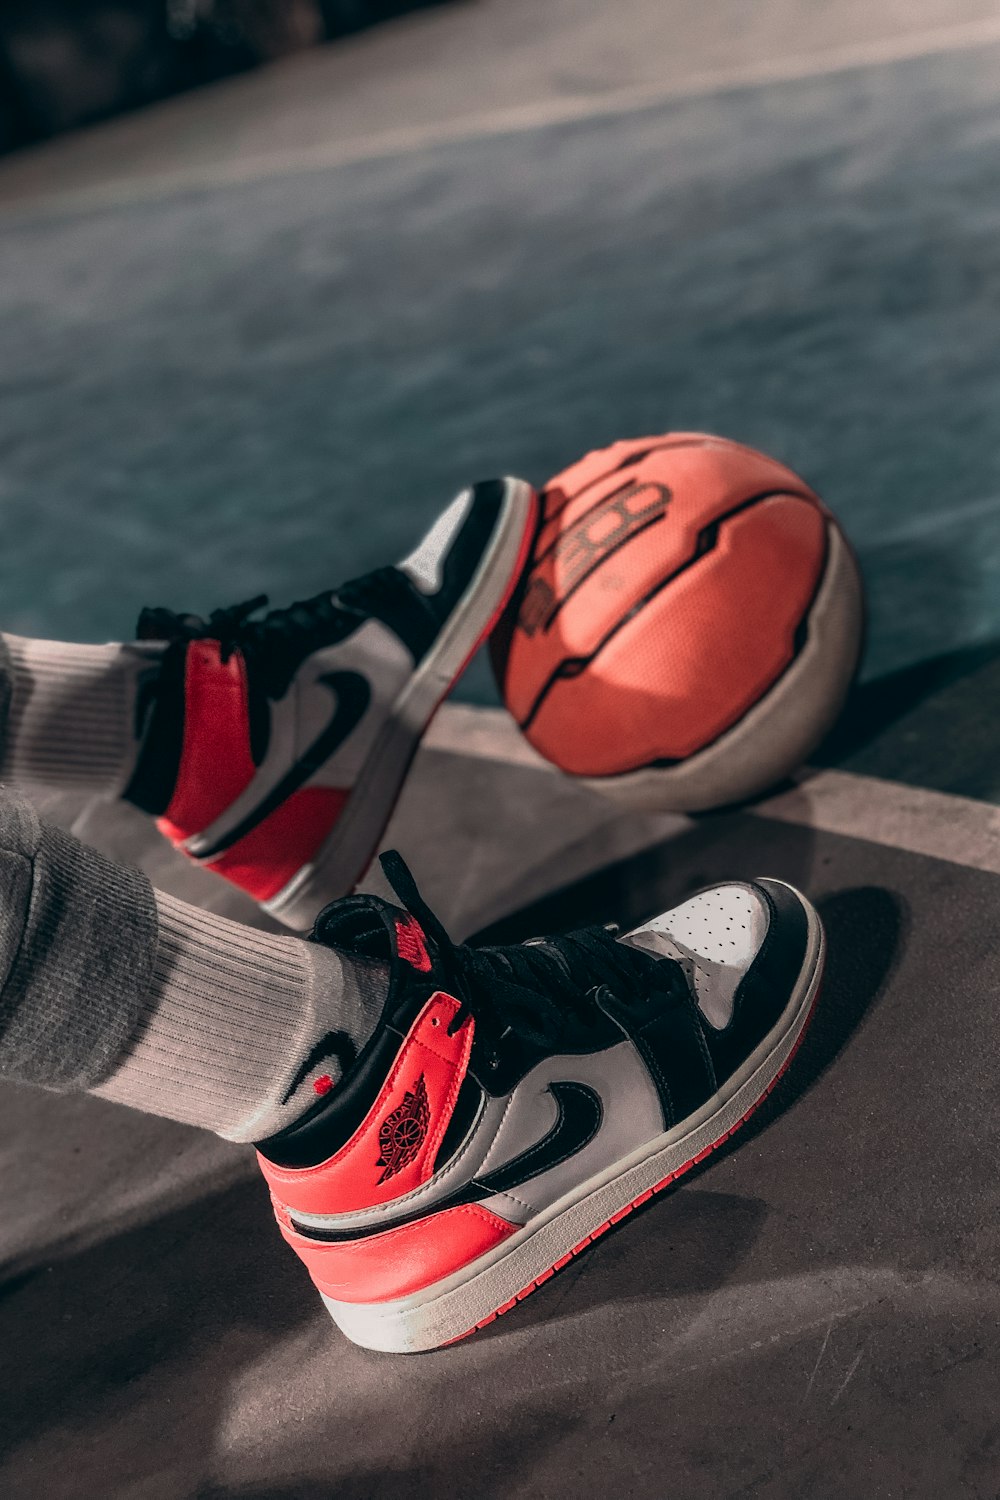 Persona che indossa scarpe da basket Nike nere e rosse